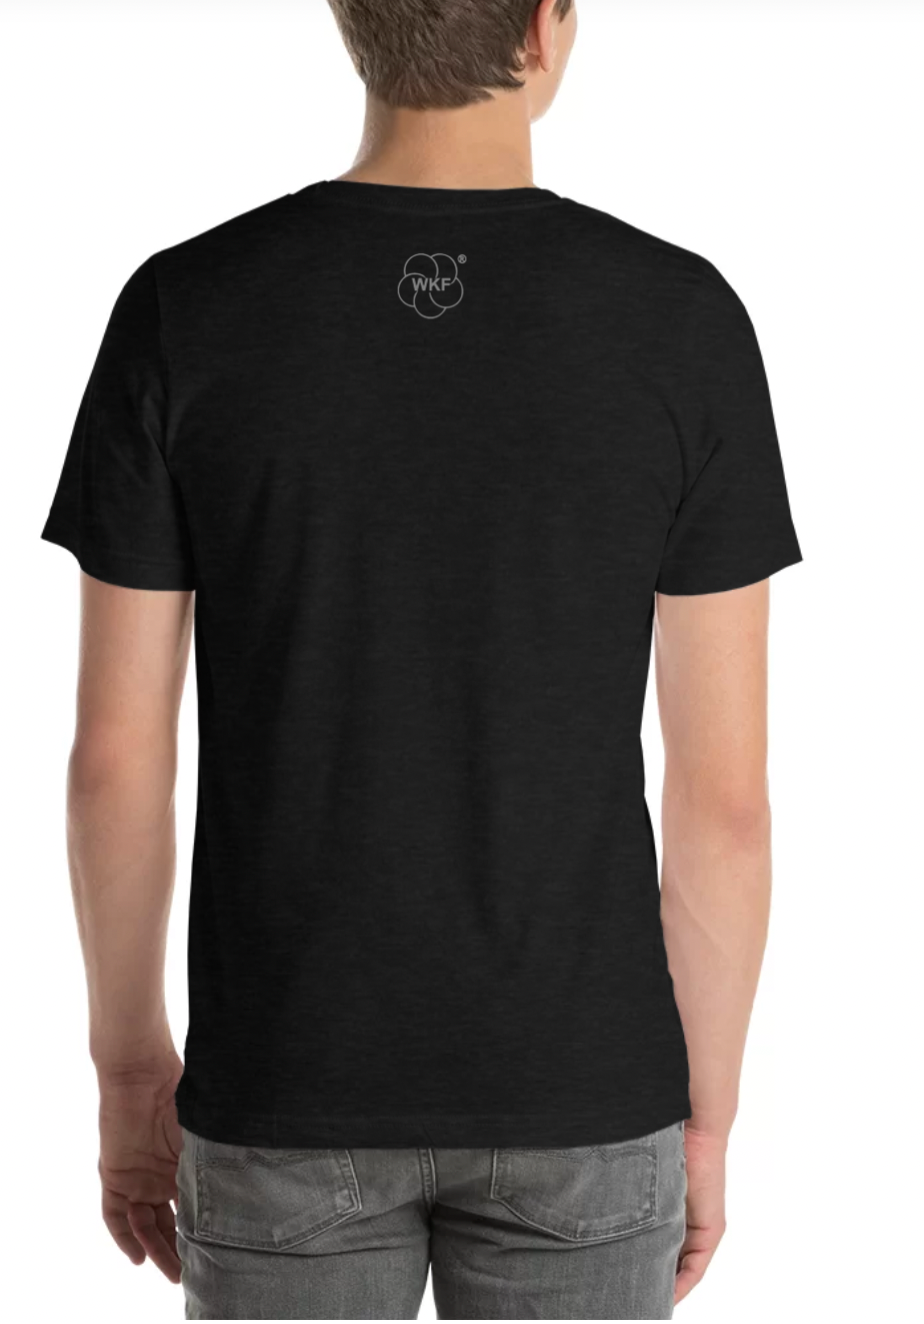 World Karate Federation Adult Unisex T-Shirt - Icon